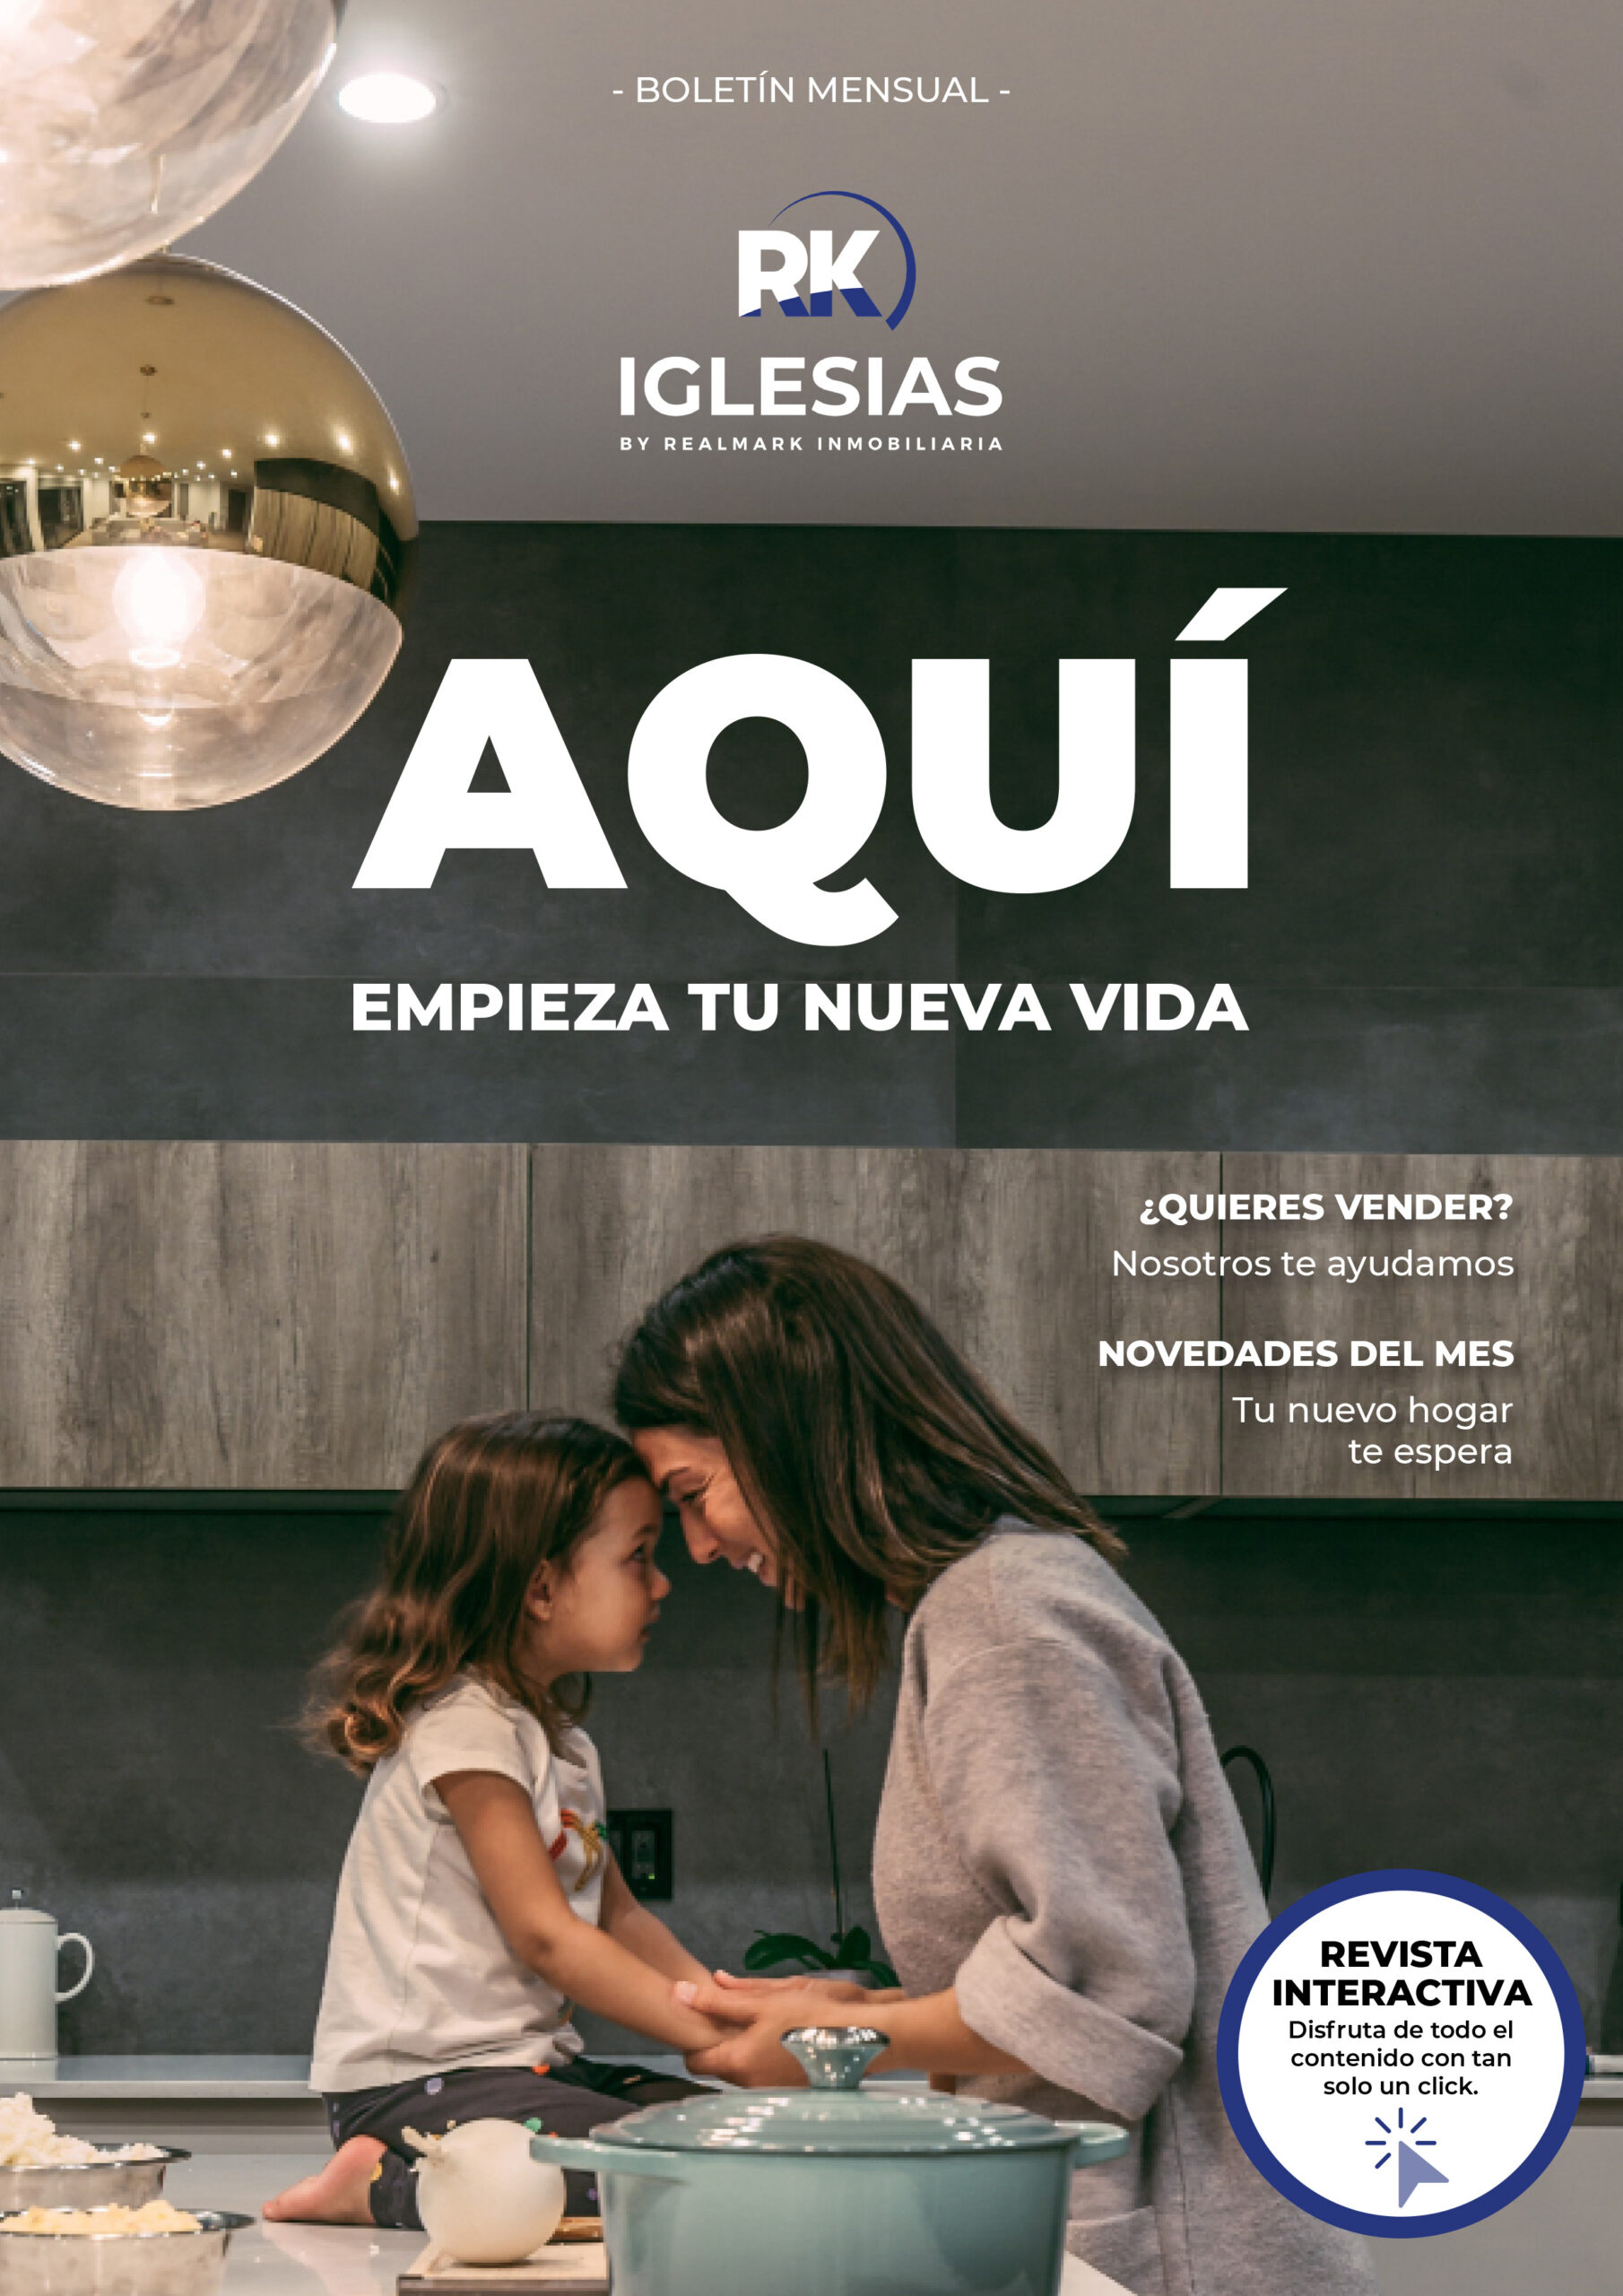 Boletín inmobiliario interactivo - Inmobiliaria en Asturias